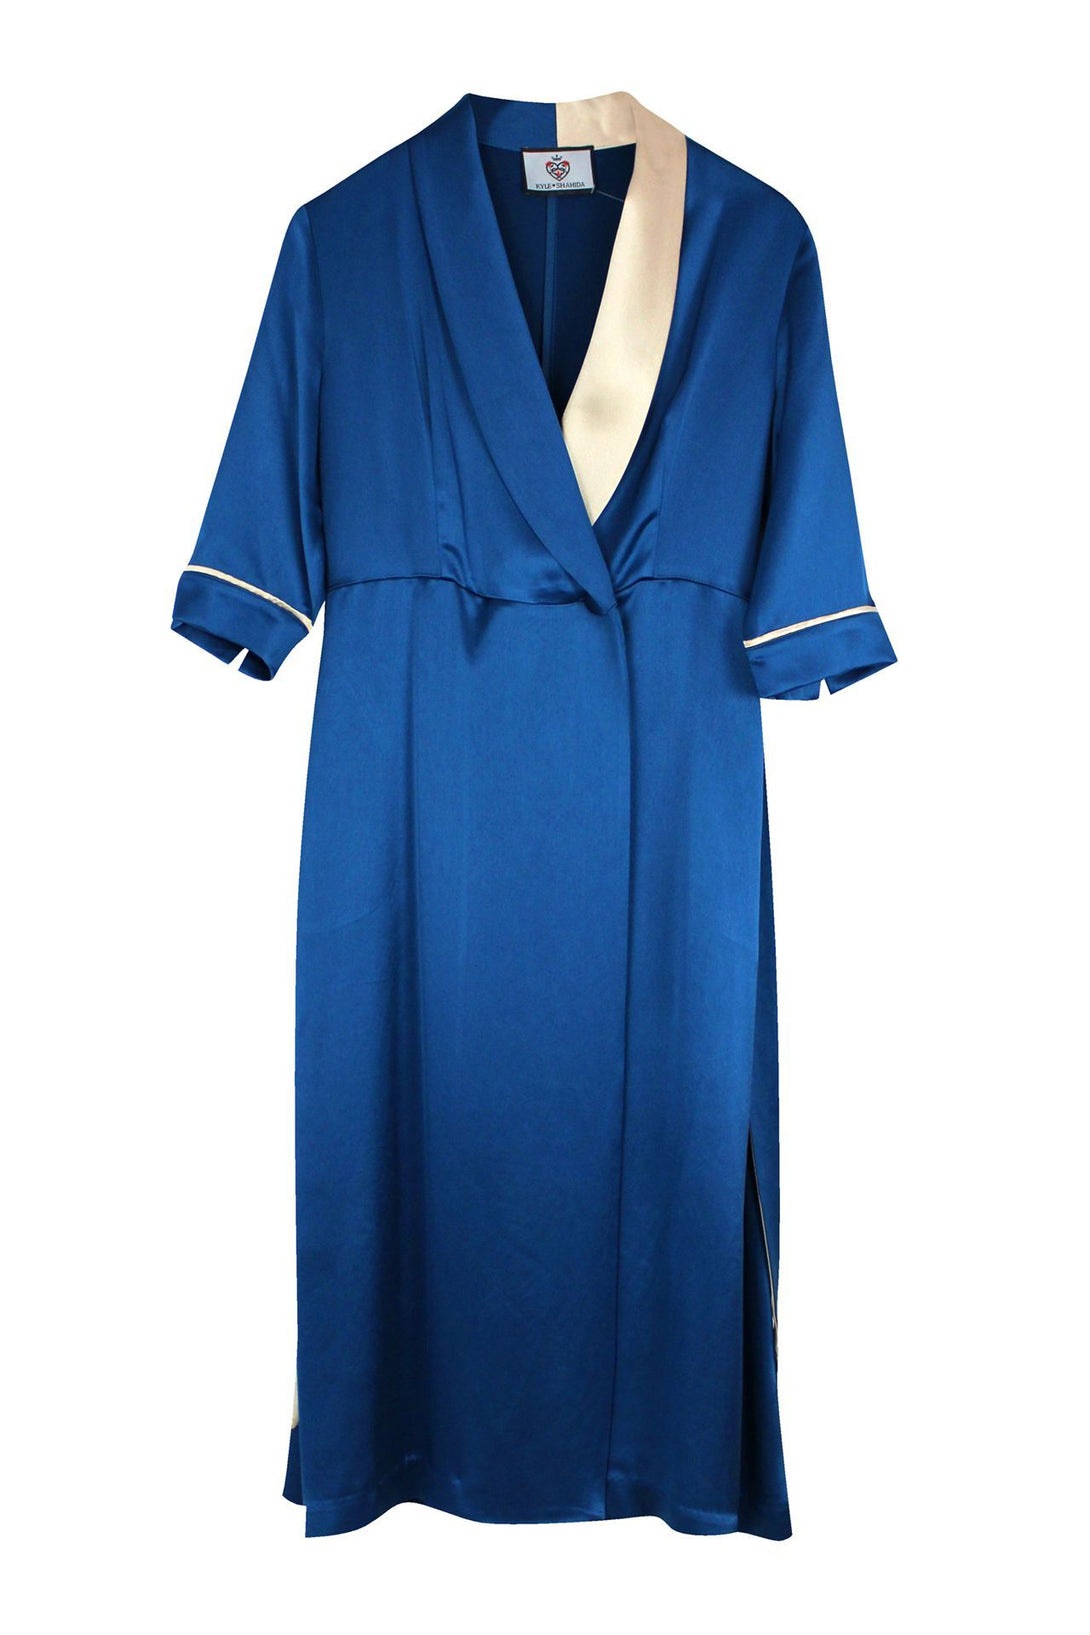 Blue-Designer-Belted-Robe-Dress-By-Kyle-Richard